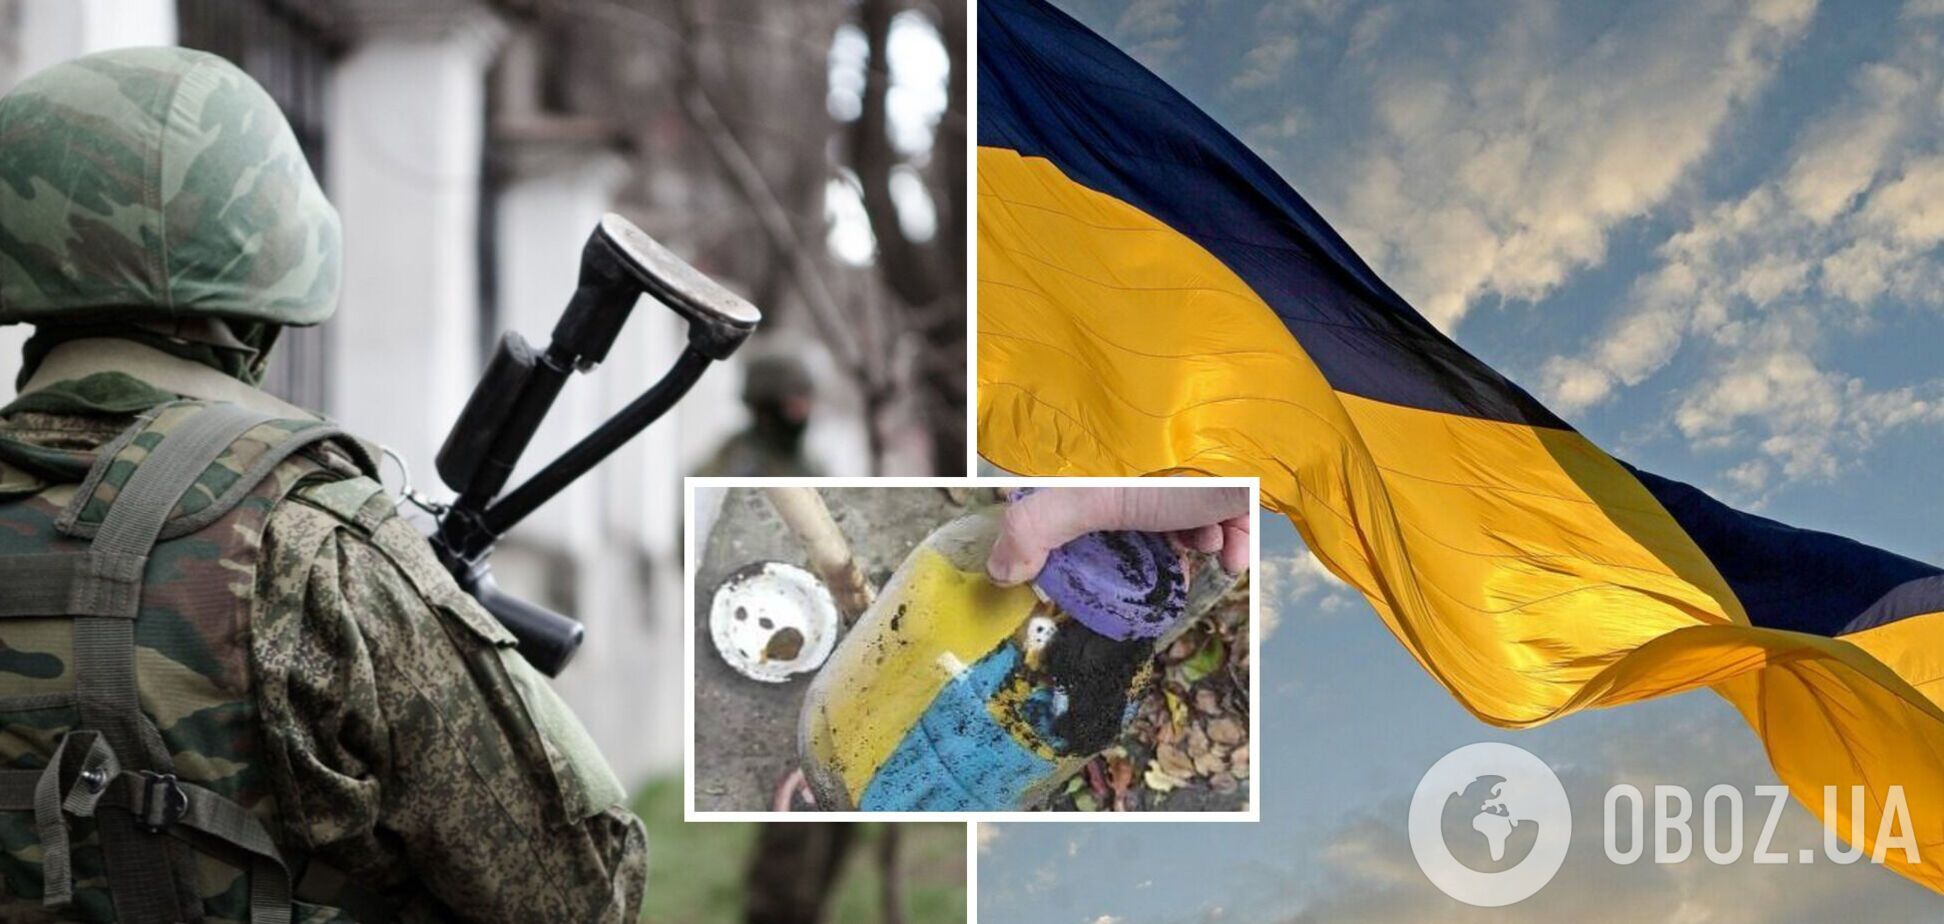 На Харьковщине мужчина закопал в своем огороде флаг Украины, чтобы сберечь от оккупантов: достали его уже бойцы ВСУ. Фото